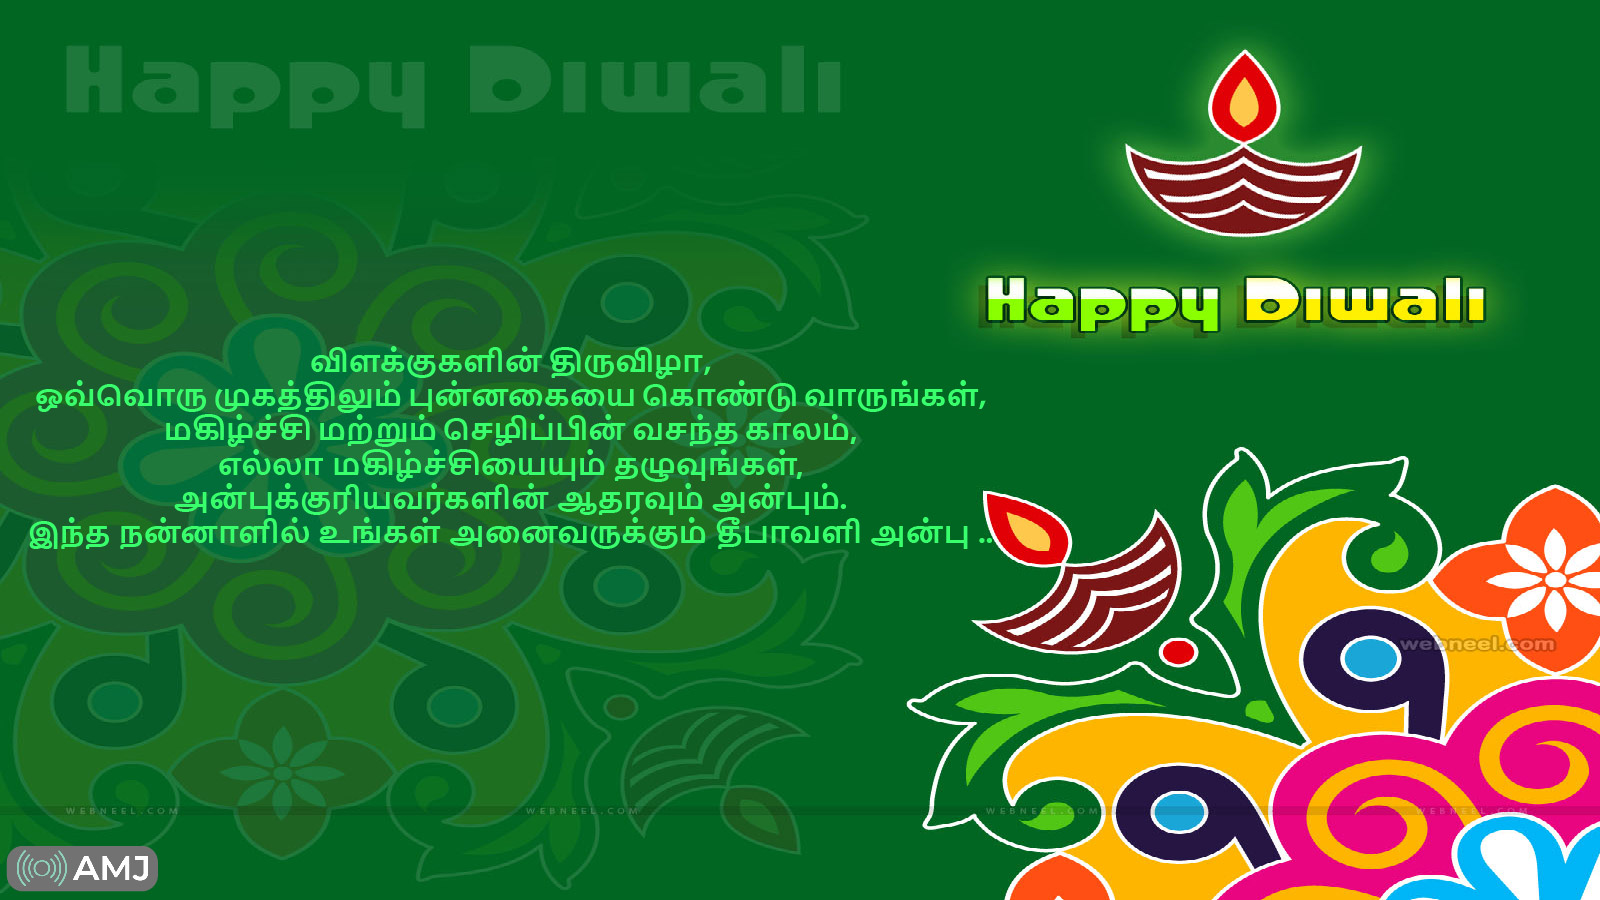 Deepavali Image in Tamil